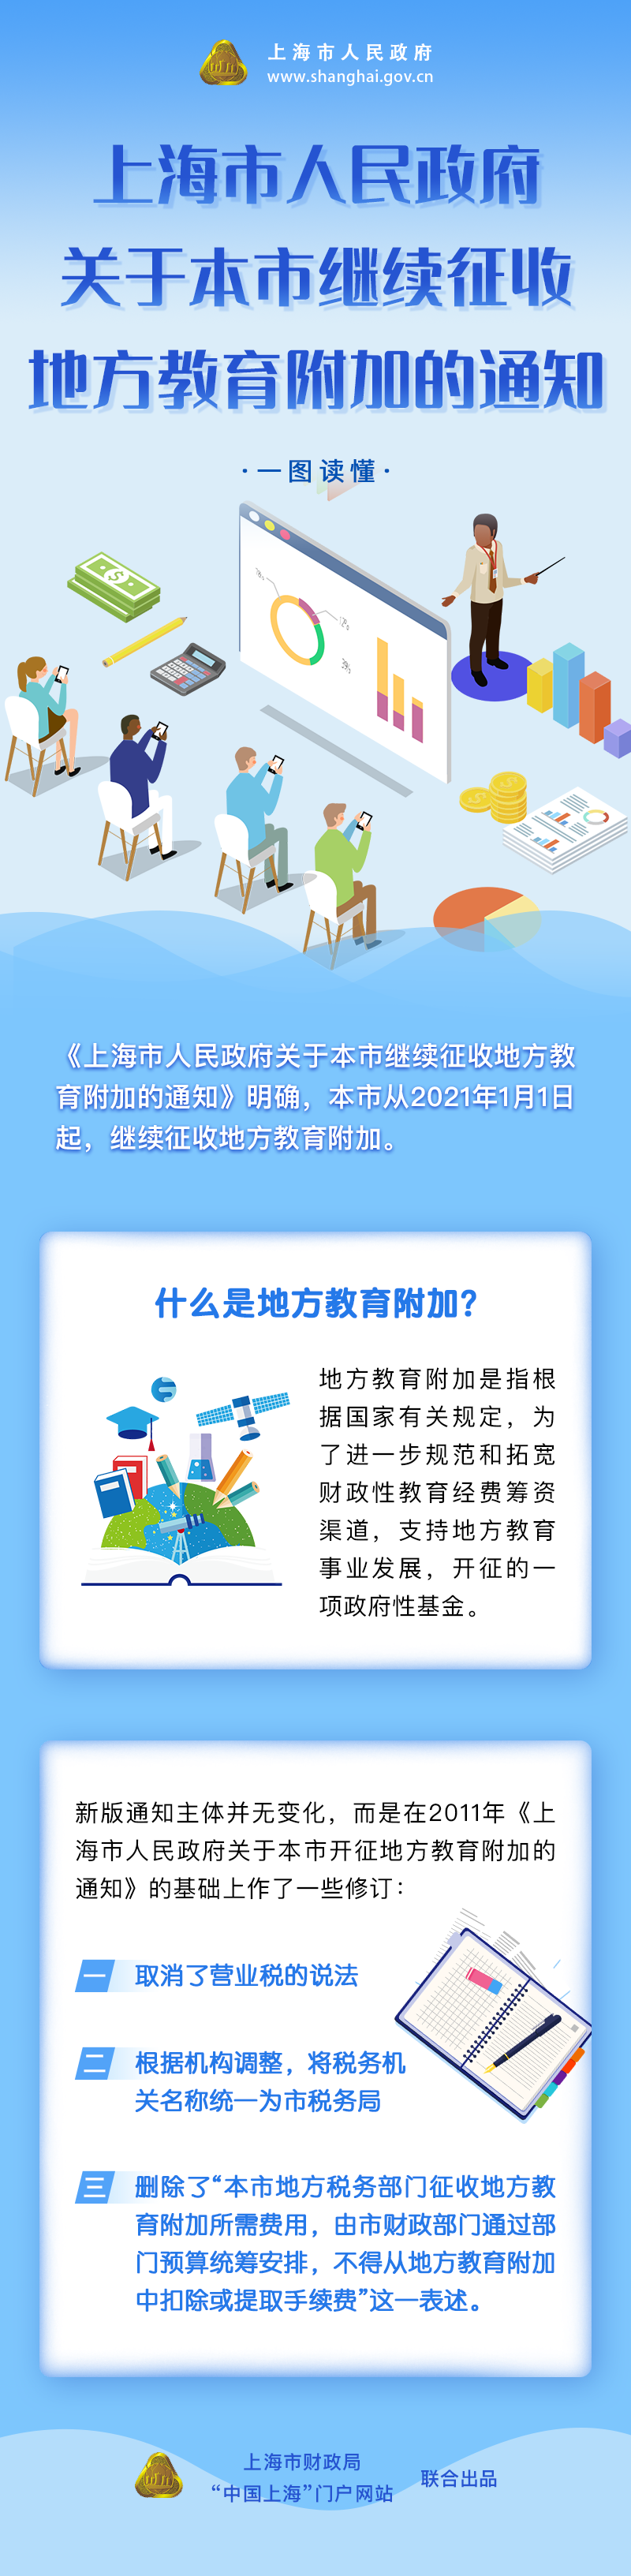 《上海市人民政府关于本市继续征收地方教育附加的通知》修订要点图解.png